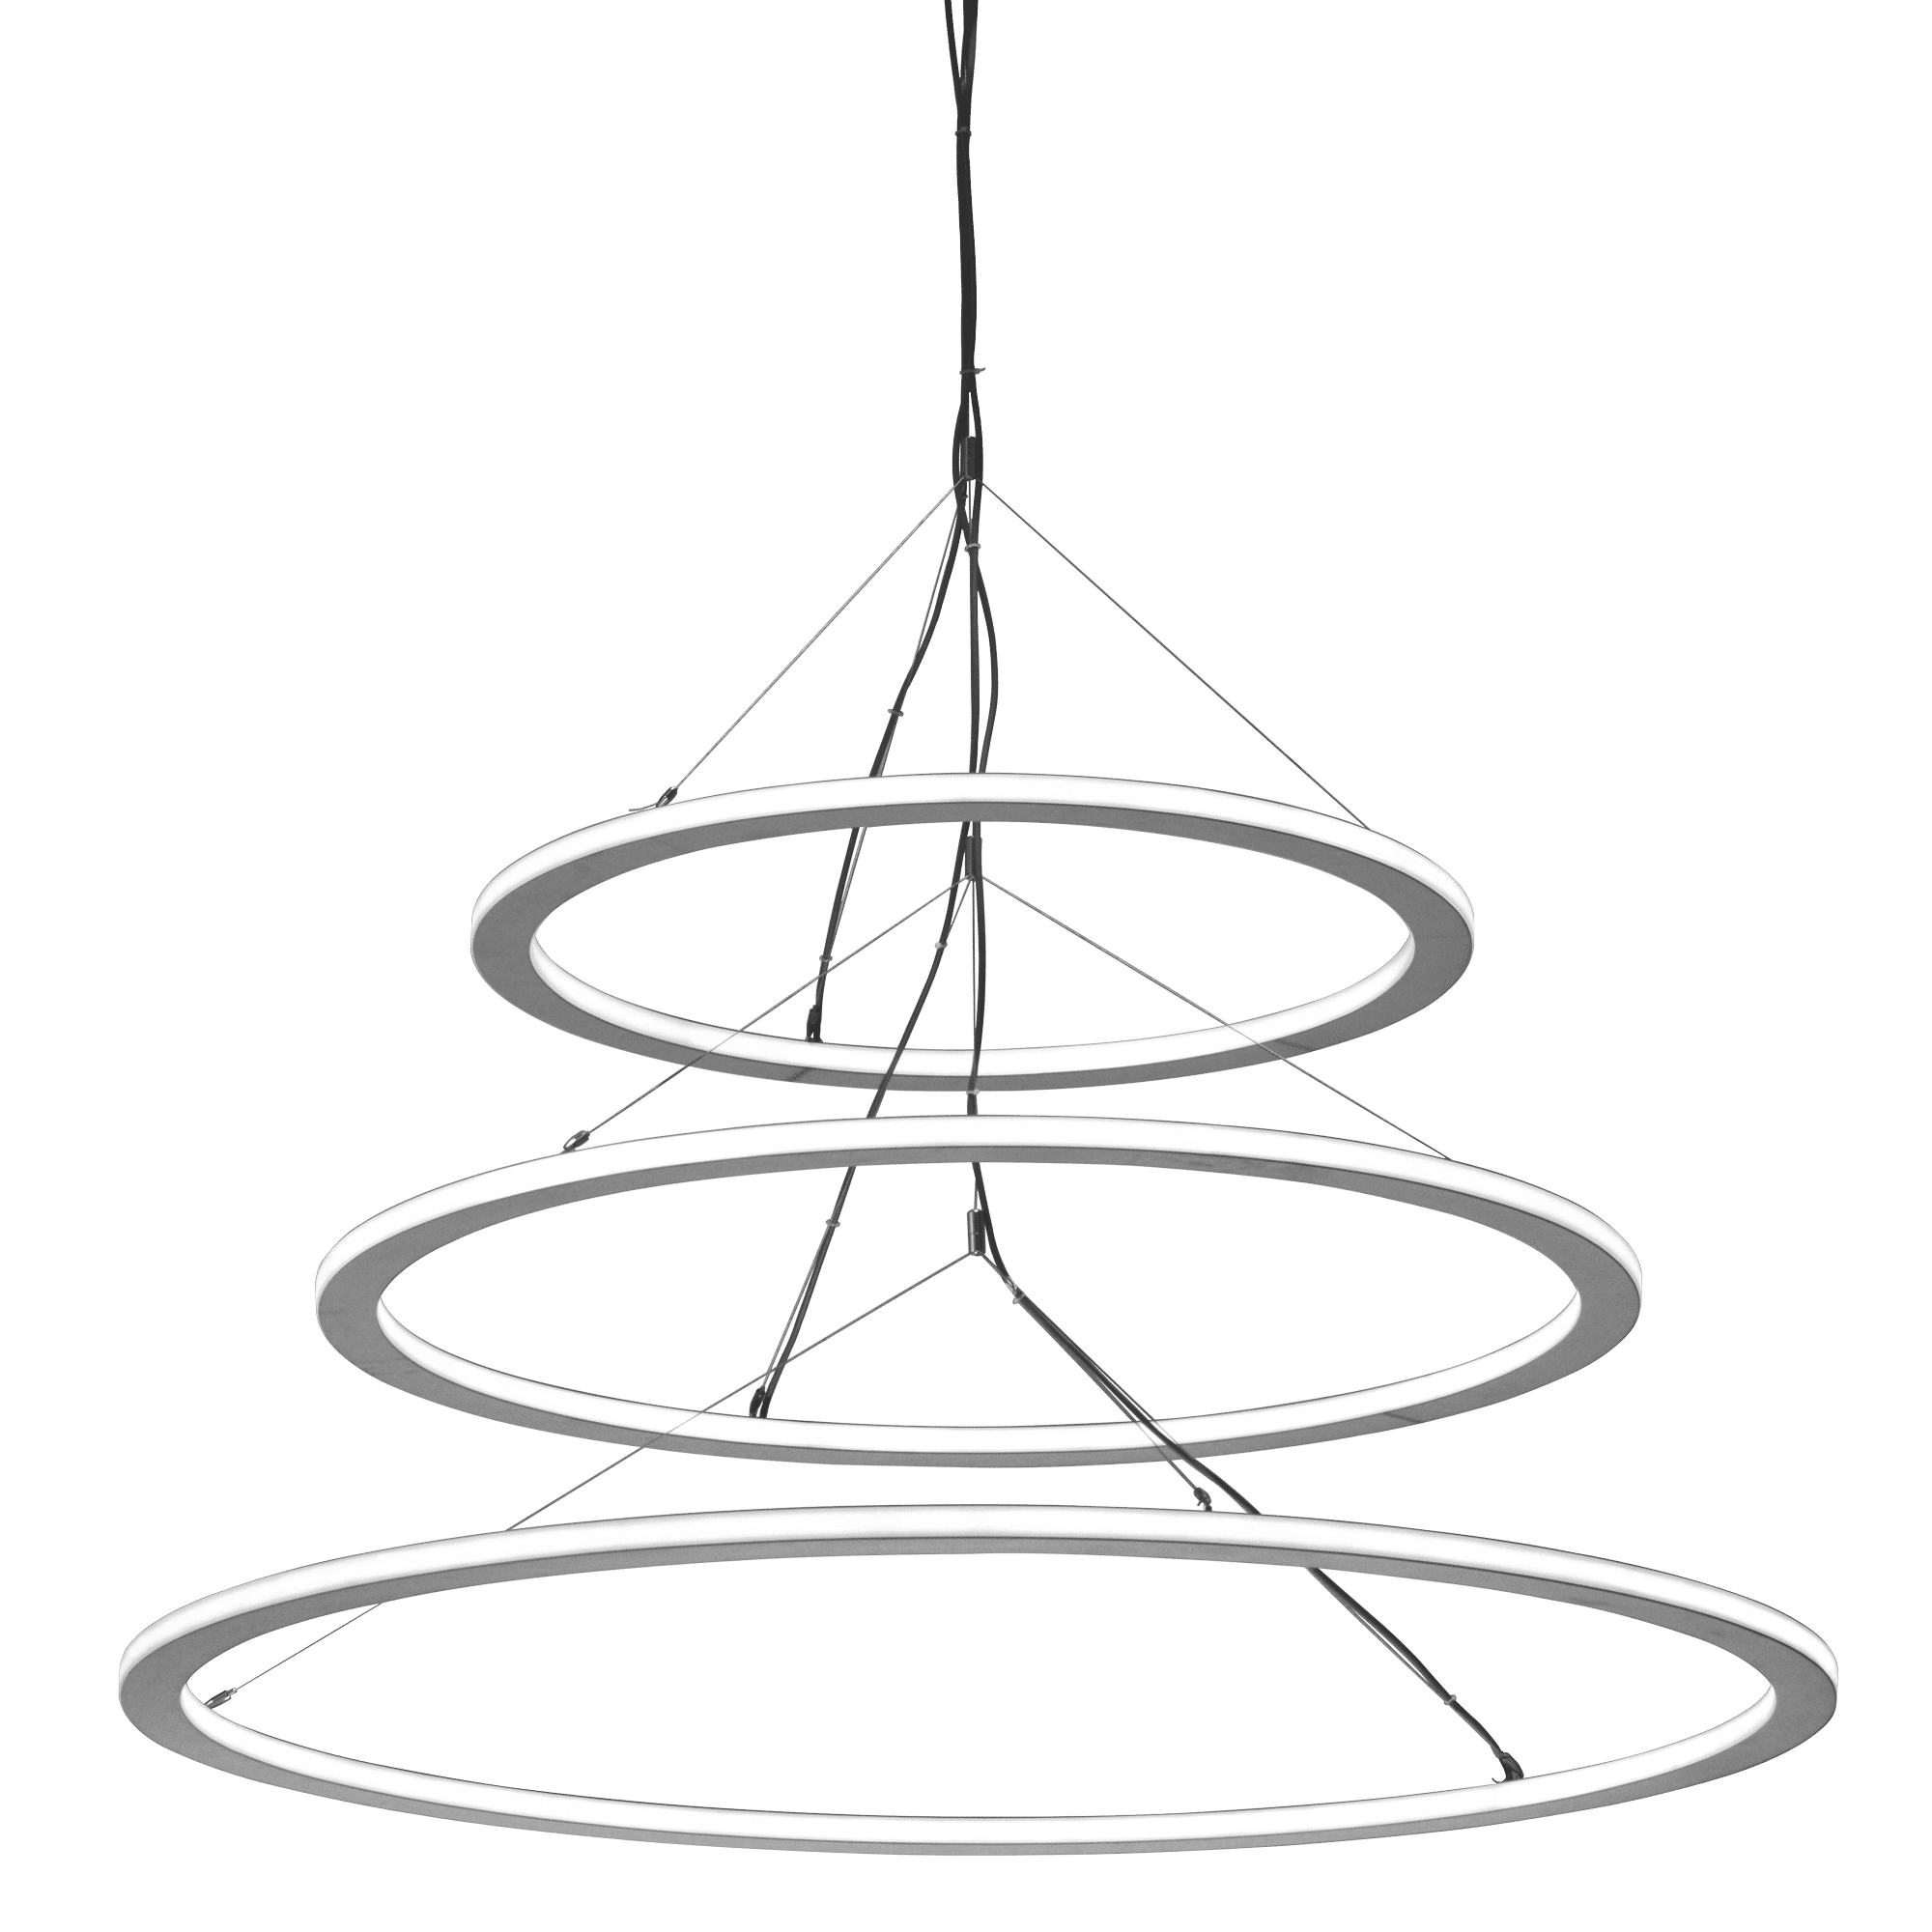 Uno Triple Circle Configuration